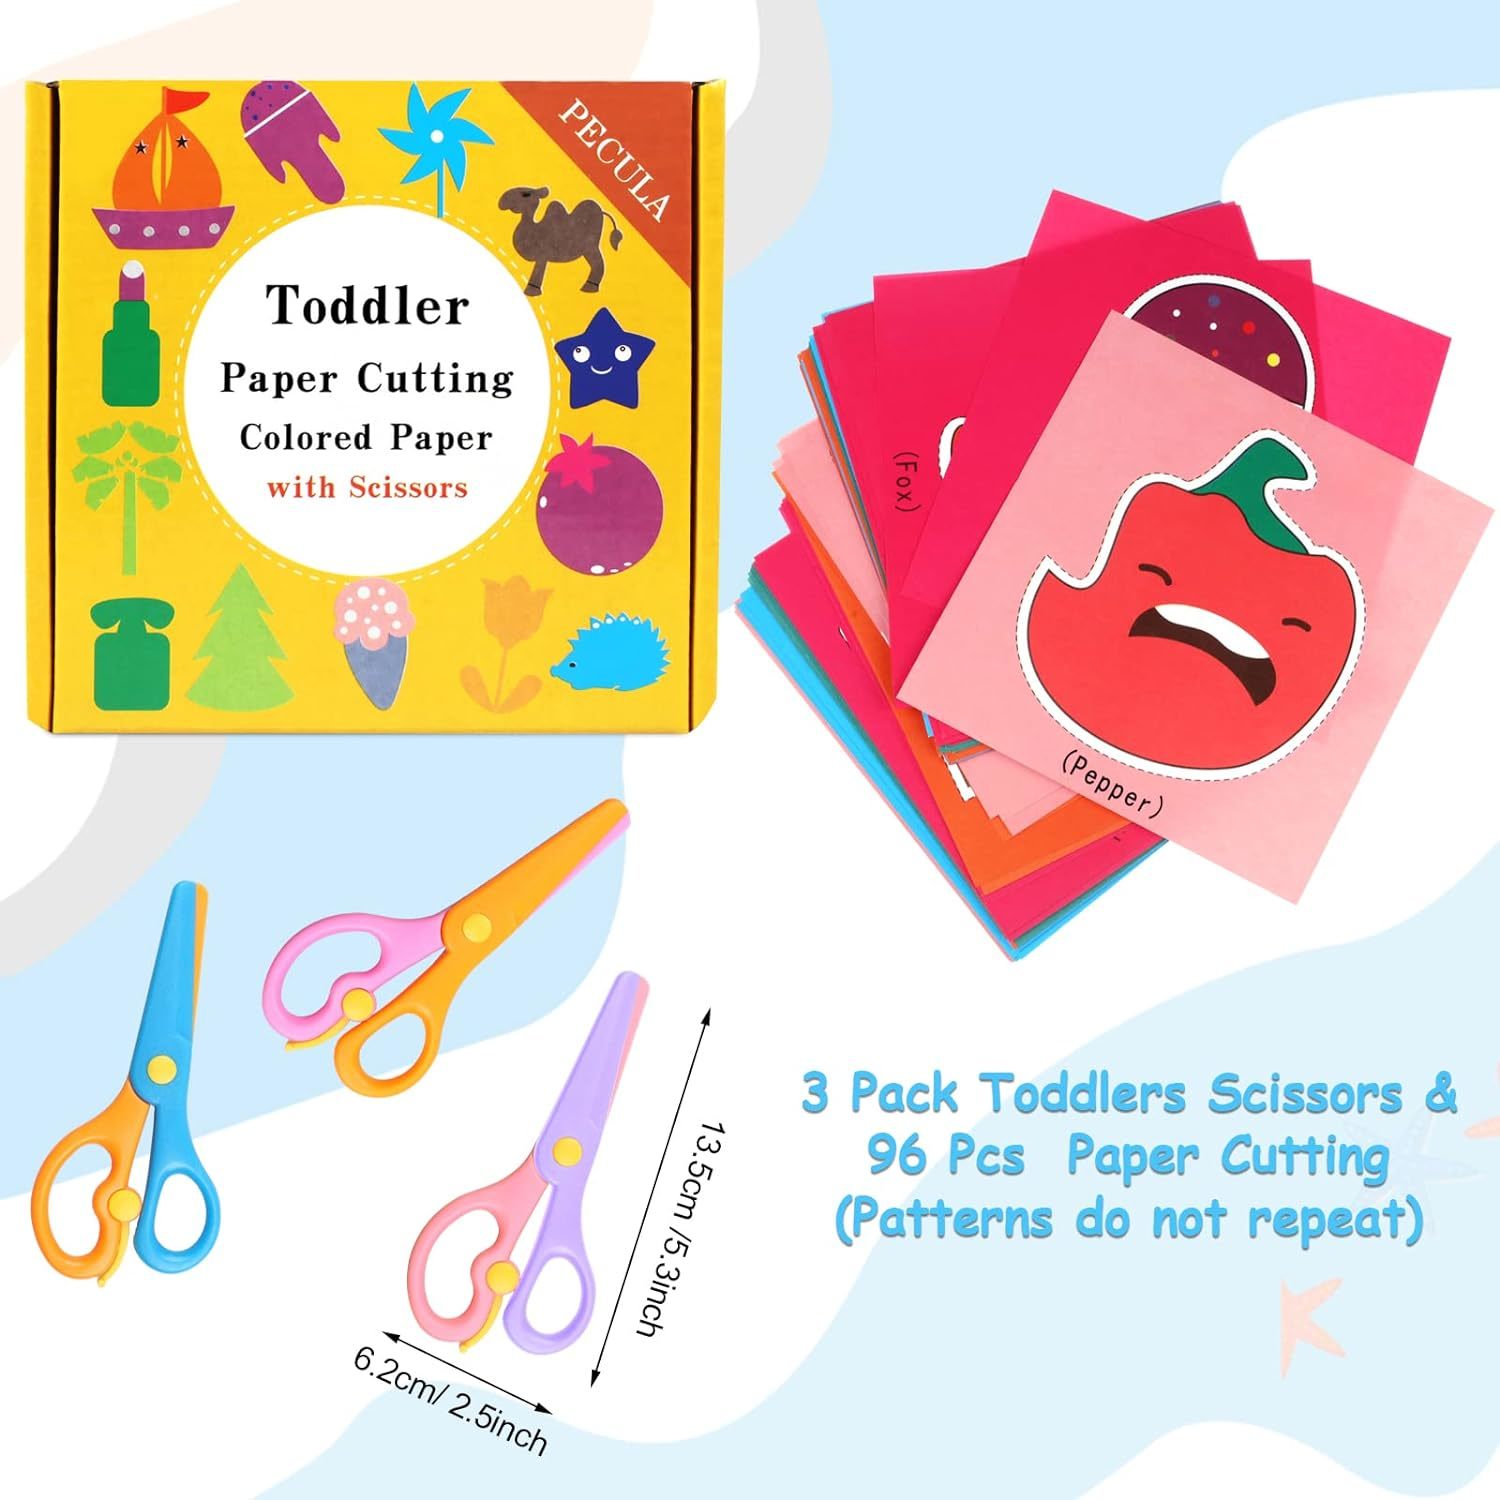 3 Pack Toddler Scissors, Kids Scissors, Plastic Children Safety Scissors, Dual-C